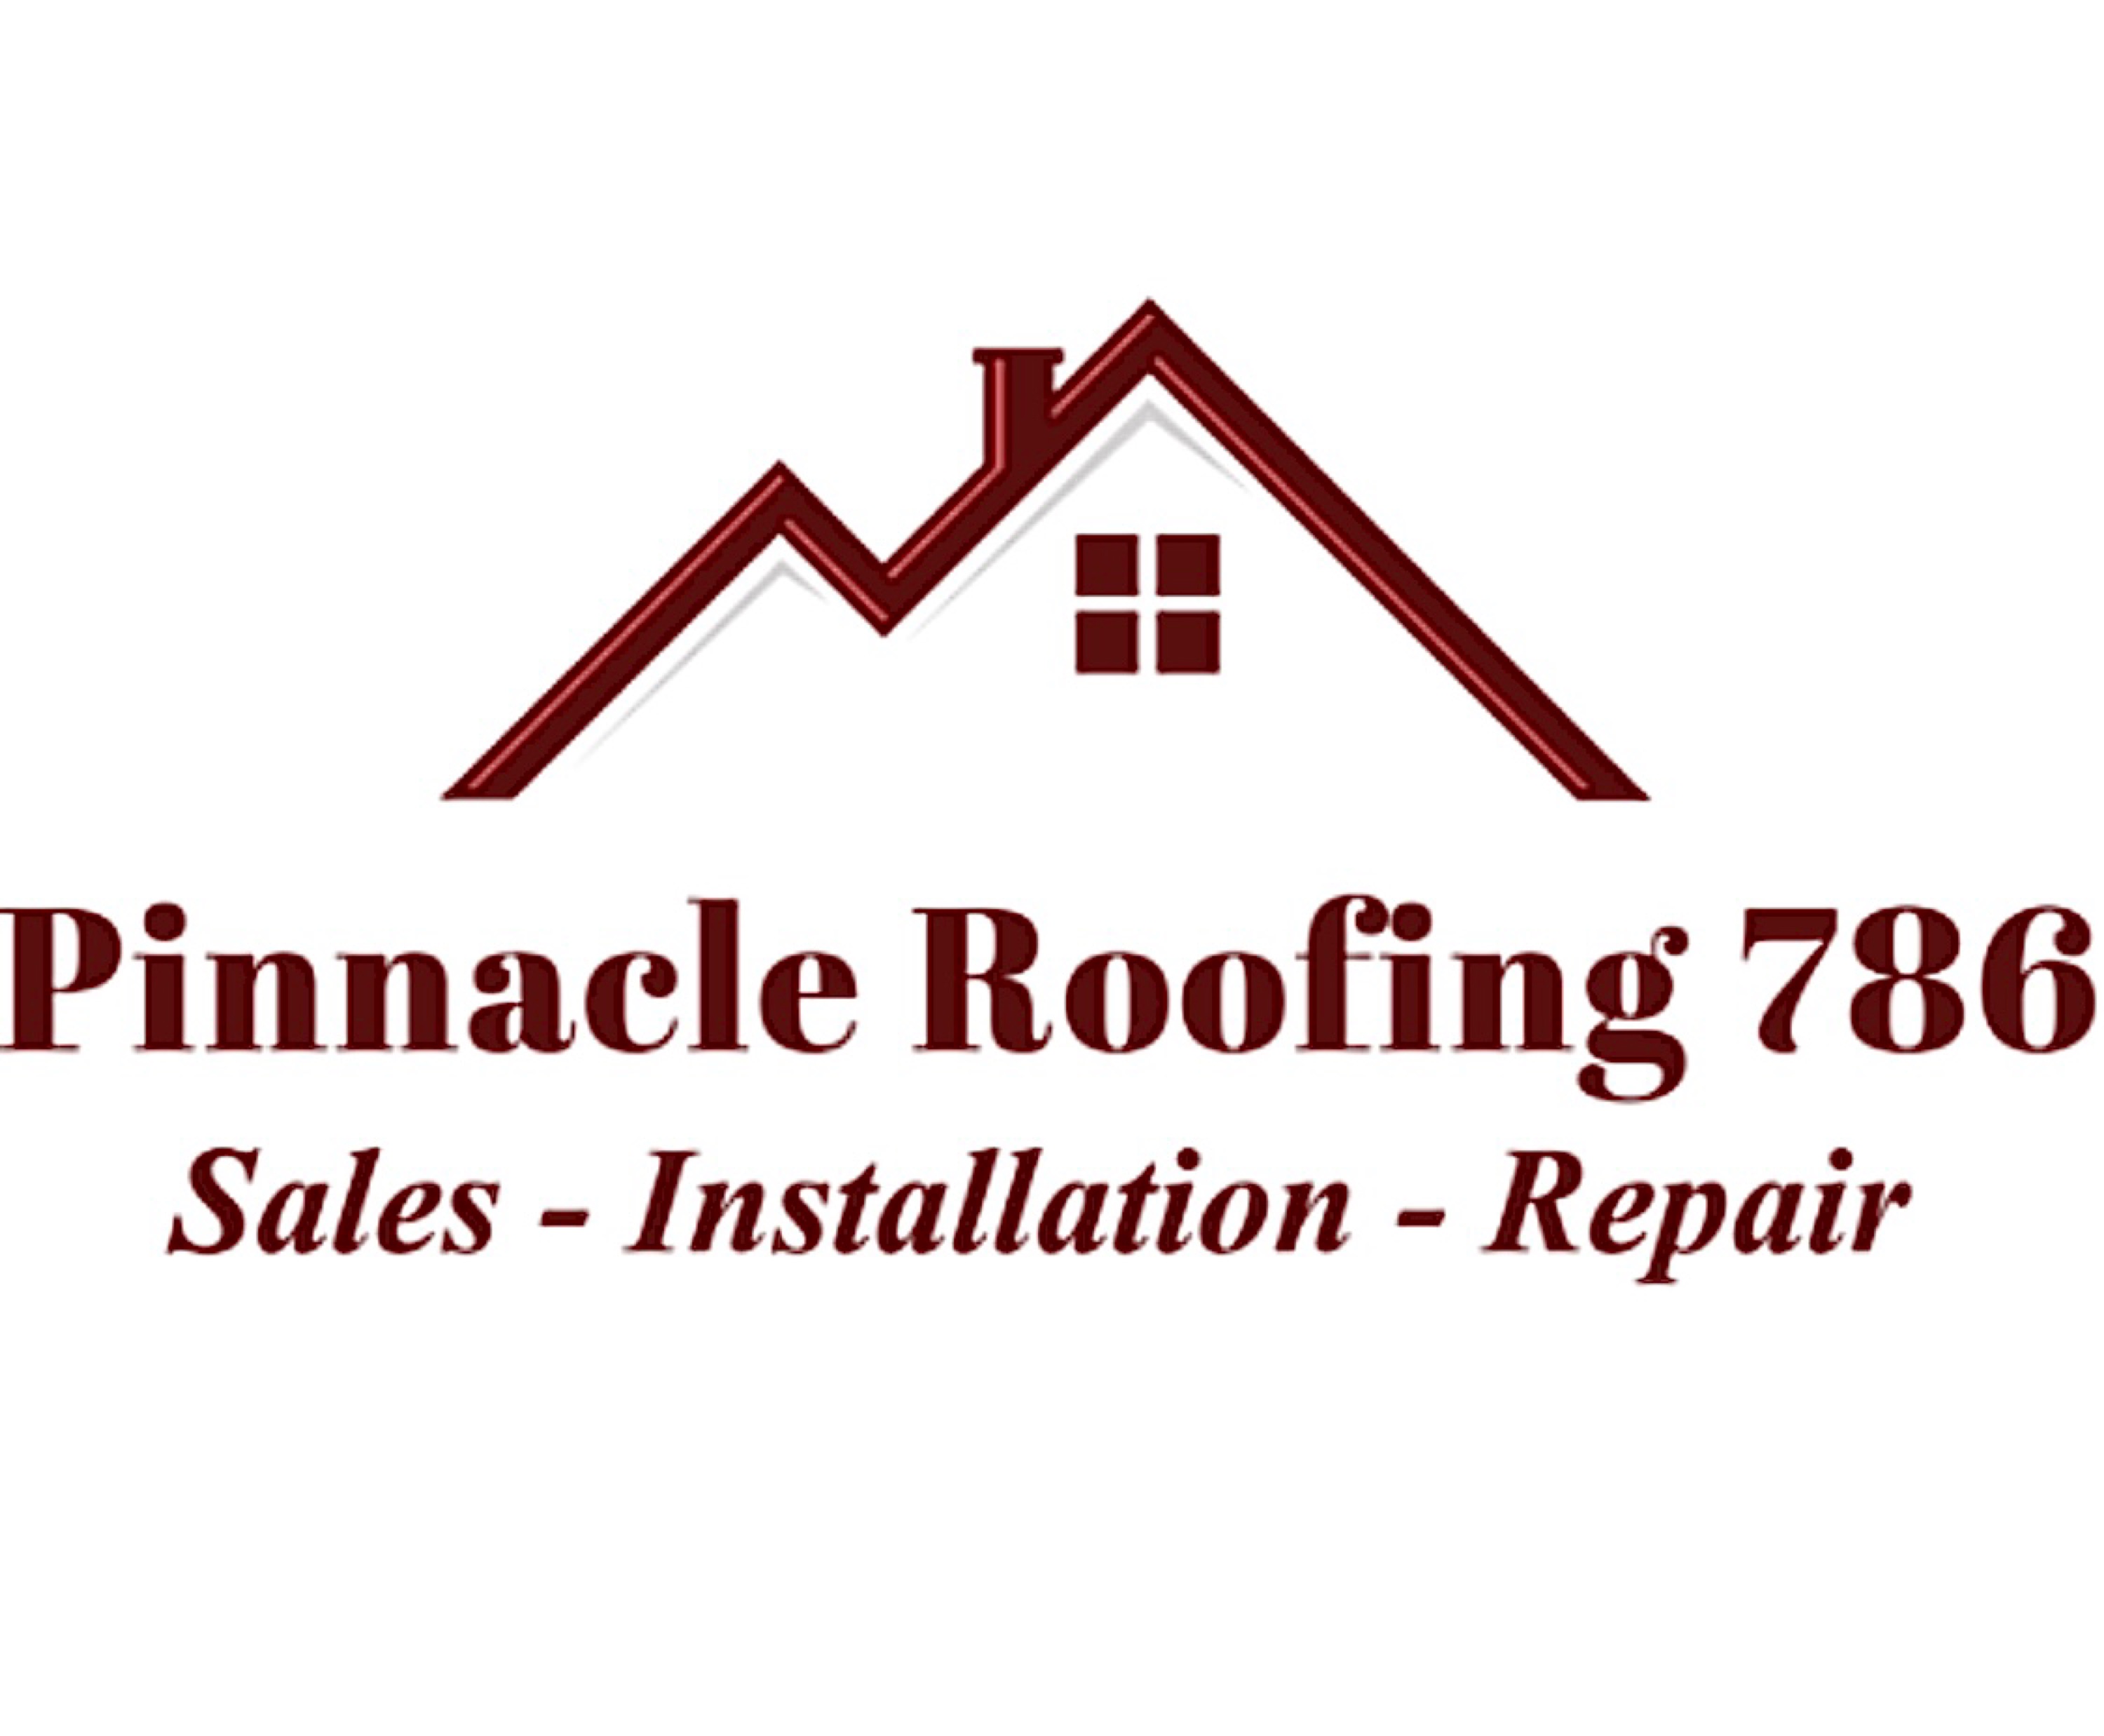 Pinnacle Roofing 786 Logo